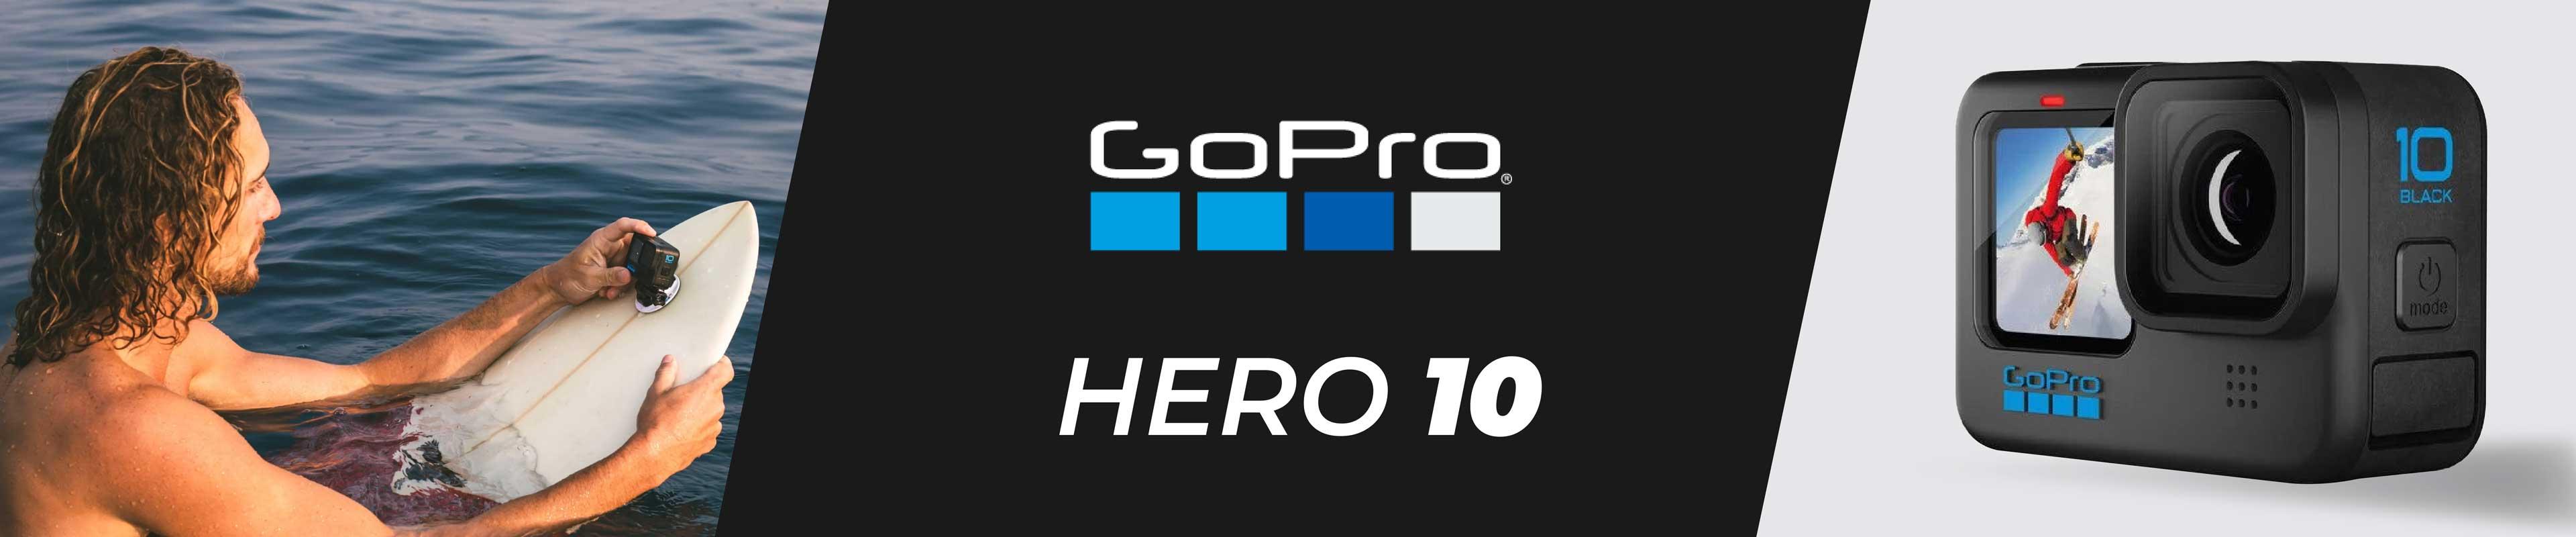 Gopro Hero 10